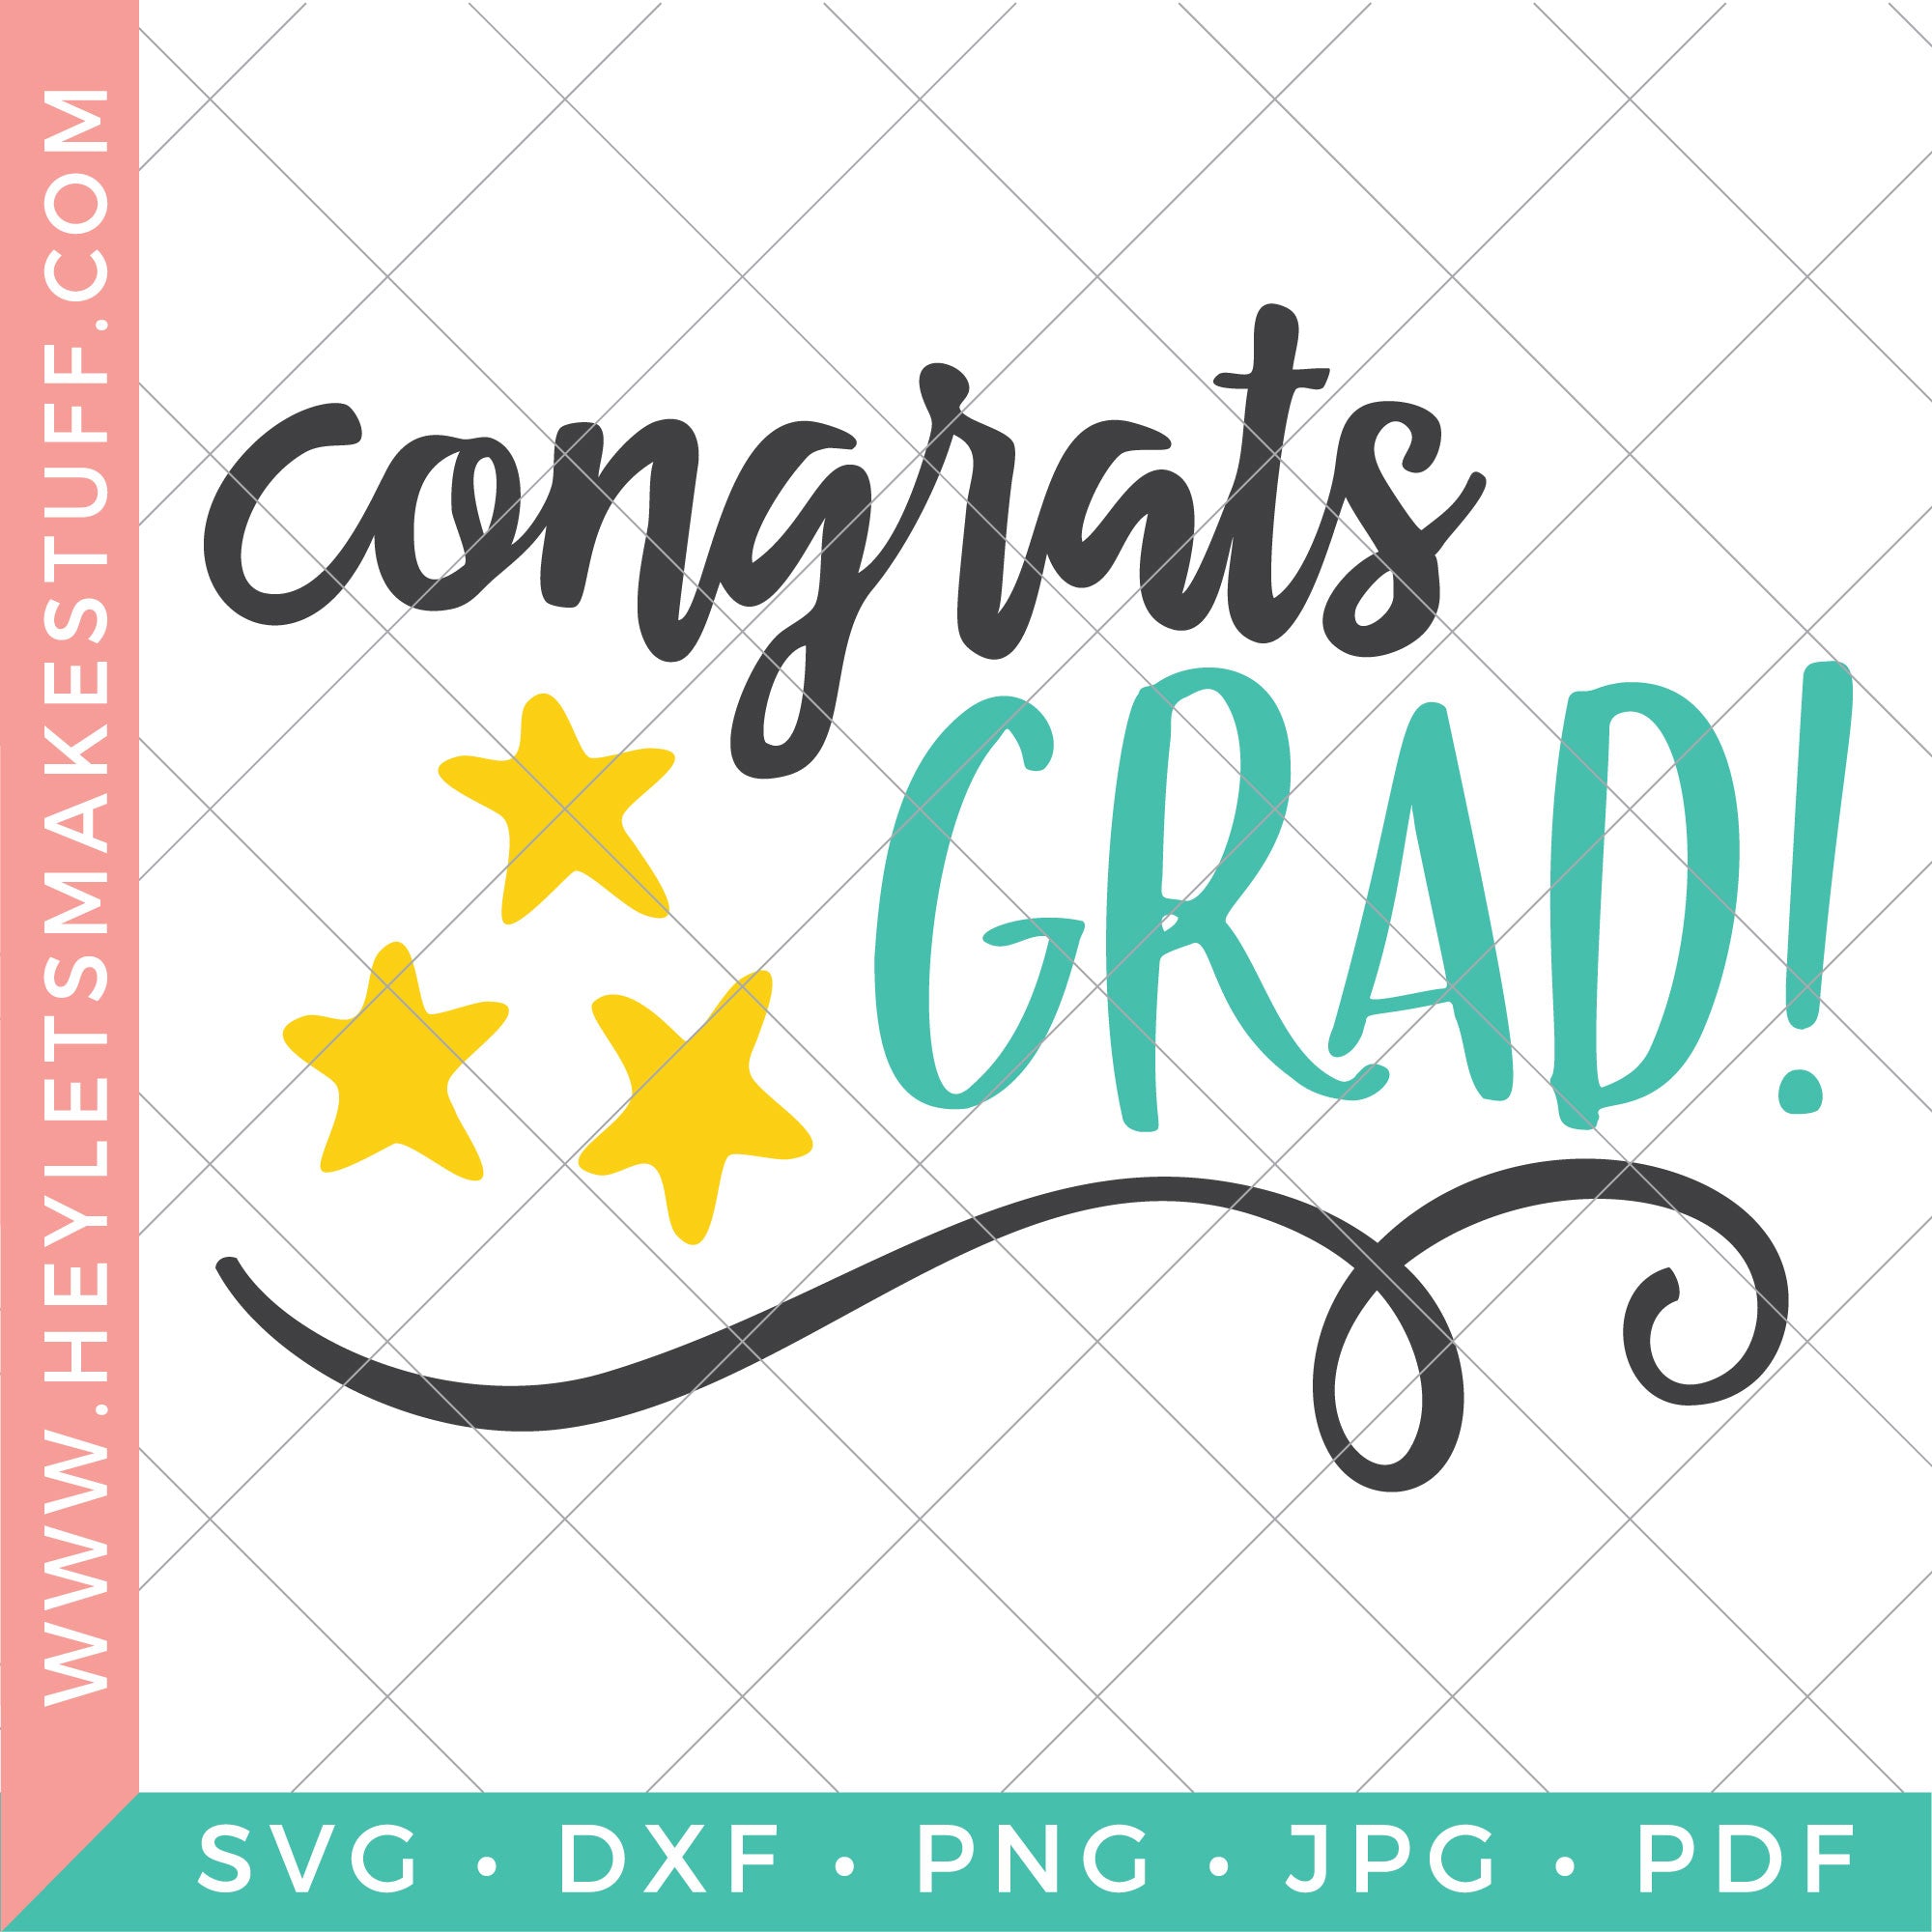 Congrats Grad! Free Graduation Card SVG